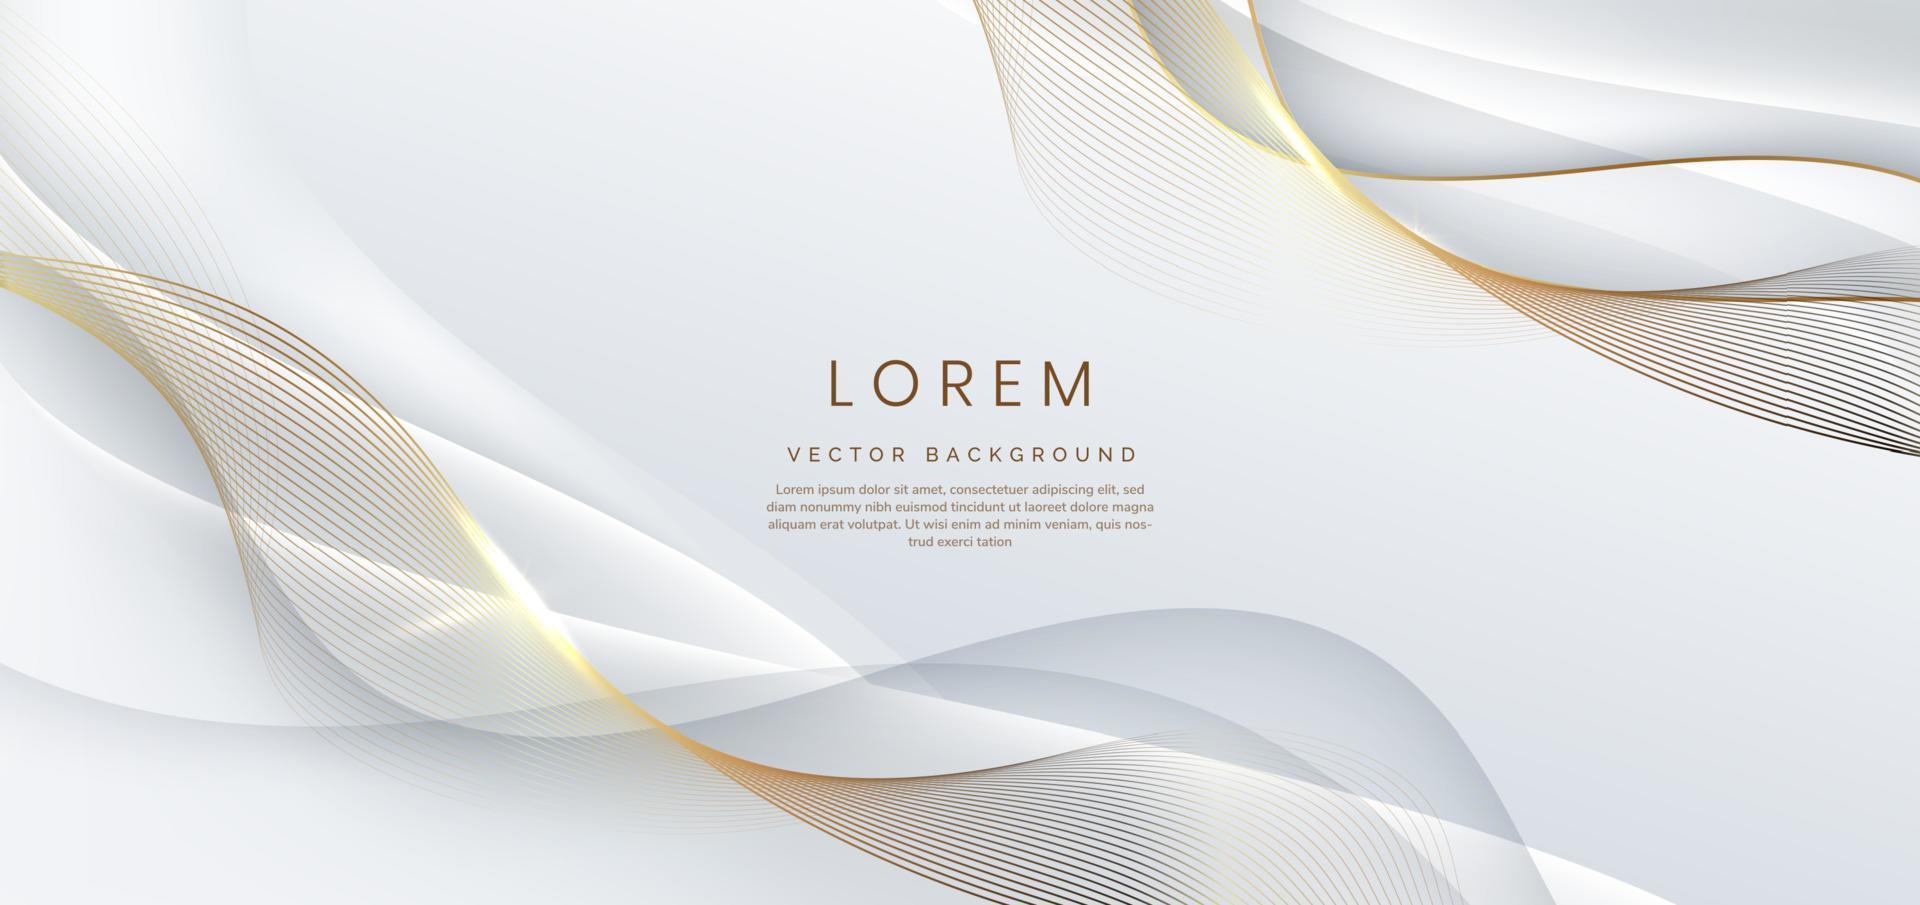 fondo blanco 3d abstracto con líneas doradas con brillo ondulado curvo con espacio de copia para texto. diseño de plantilla de estilo de lujo. vector